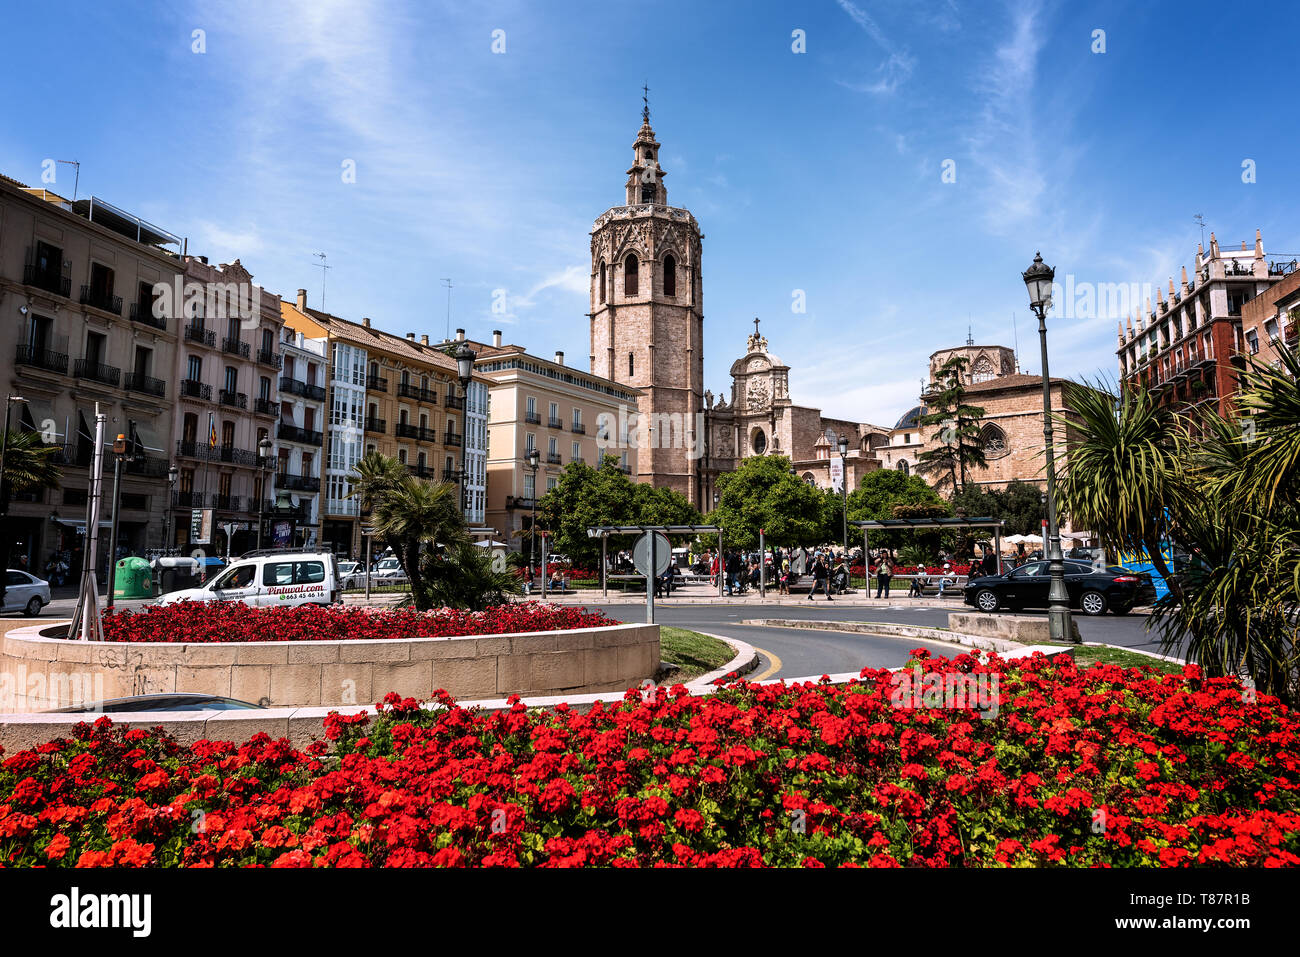 Valence, Espagne - 07 mai 2019 : une belle vue de Torre del Micalet, également connu sous le nom d'El Miguelete, le clocher de la cathédrale de Valence, dans l'histo Banque D'Images